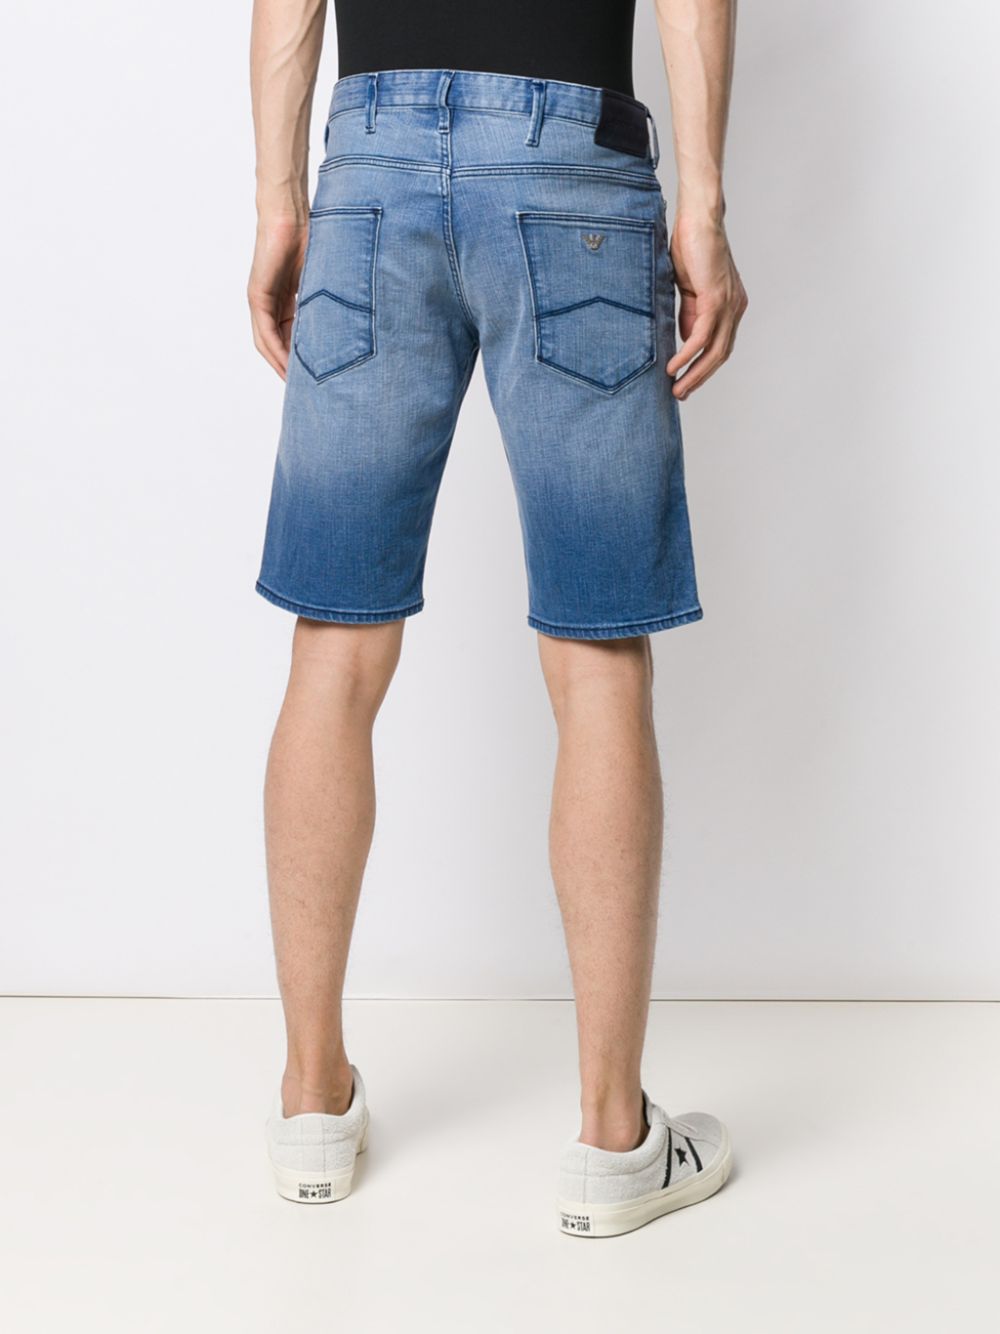 фото Emporio Armani джинсовые шорты прямого кроя